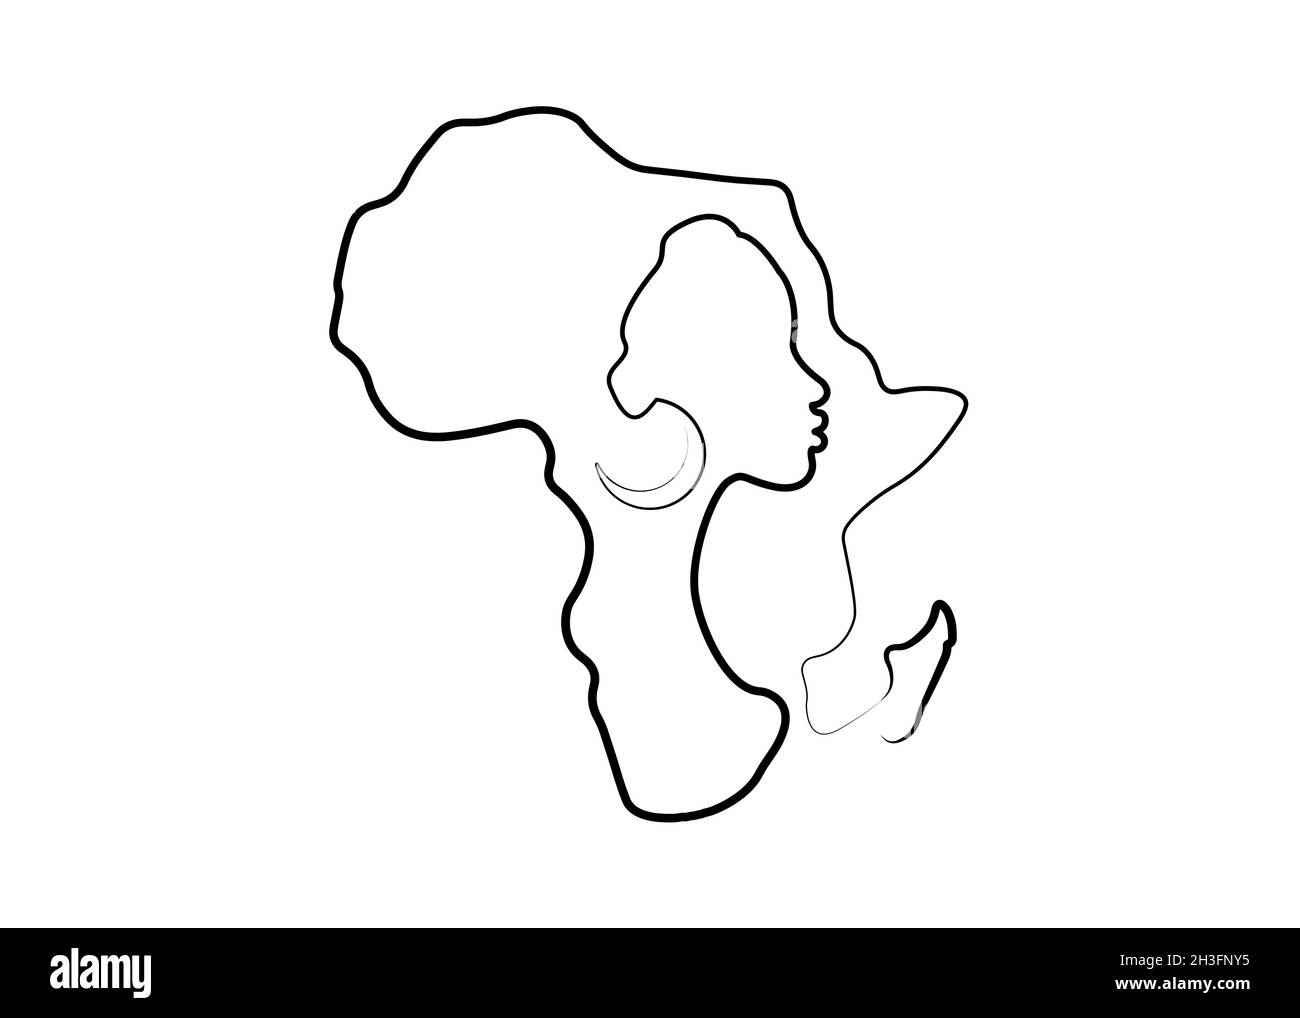 Femme africaine noire dans le style de l'art en ligne, dessin en ligne continue de la femme africaine et carte du continent africain.Logo de tatouage de dessin au trait vectoriel isolé Illustration de Vecteur